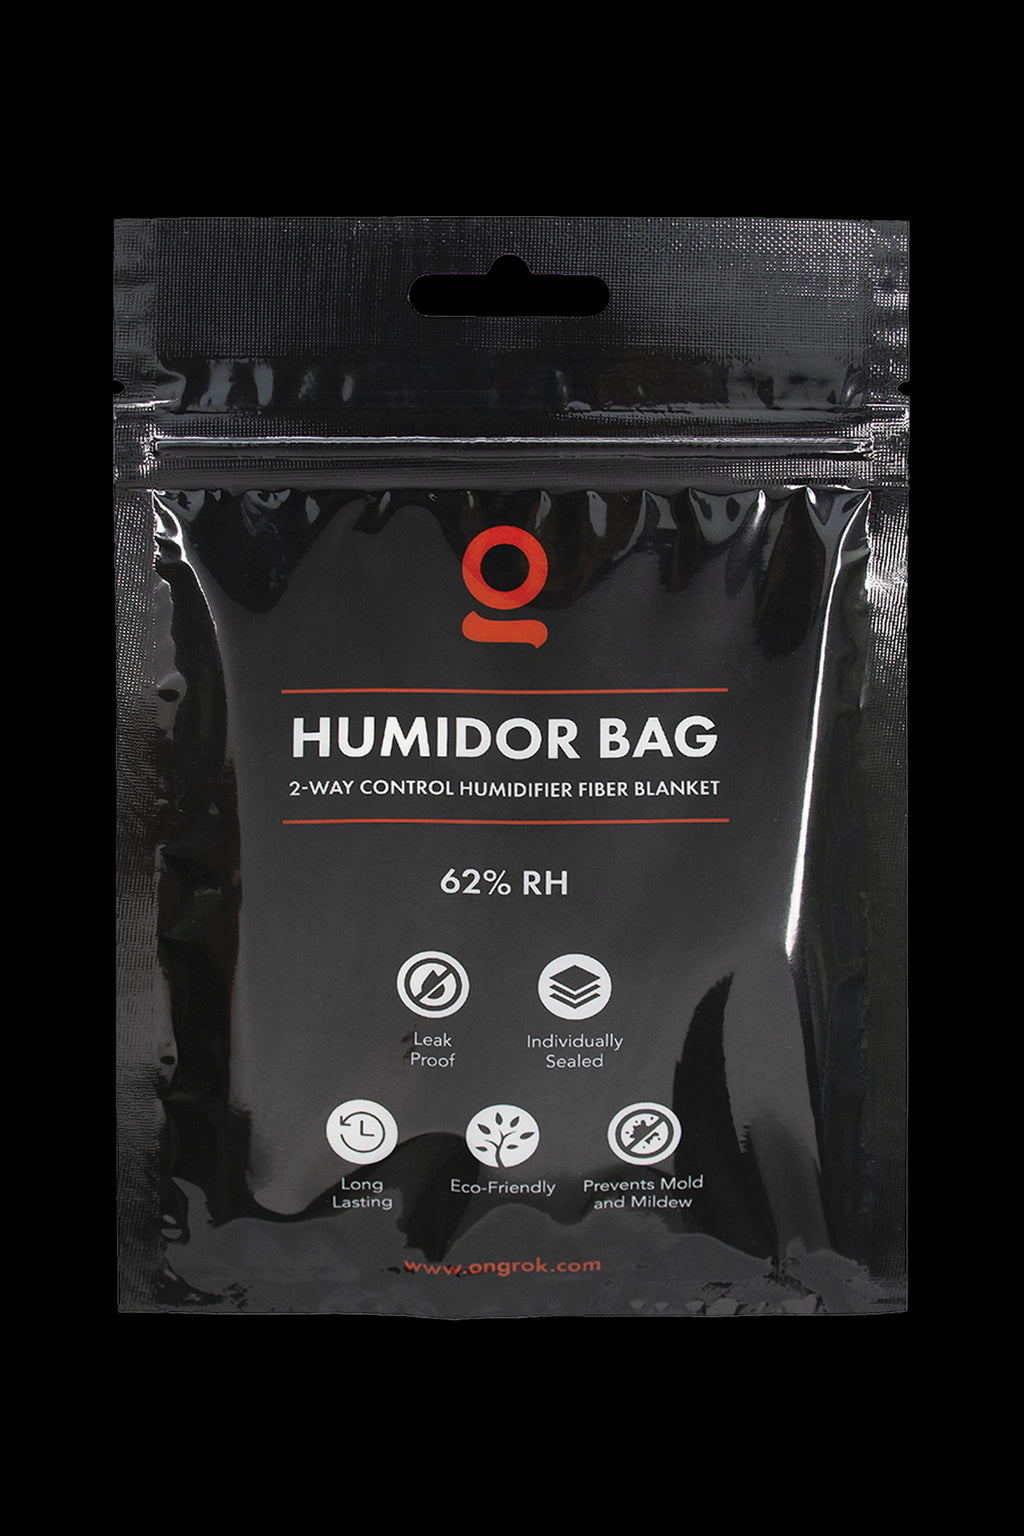 Boveda One Year Humidor Bag – Small – Cigars Daily